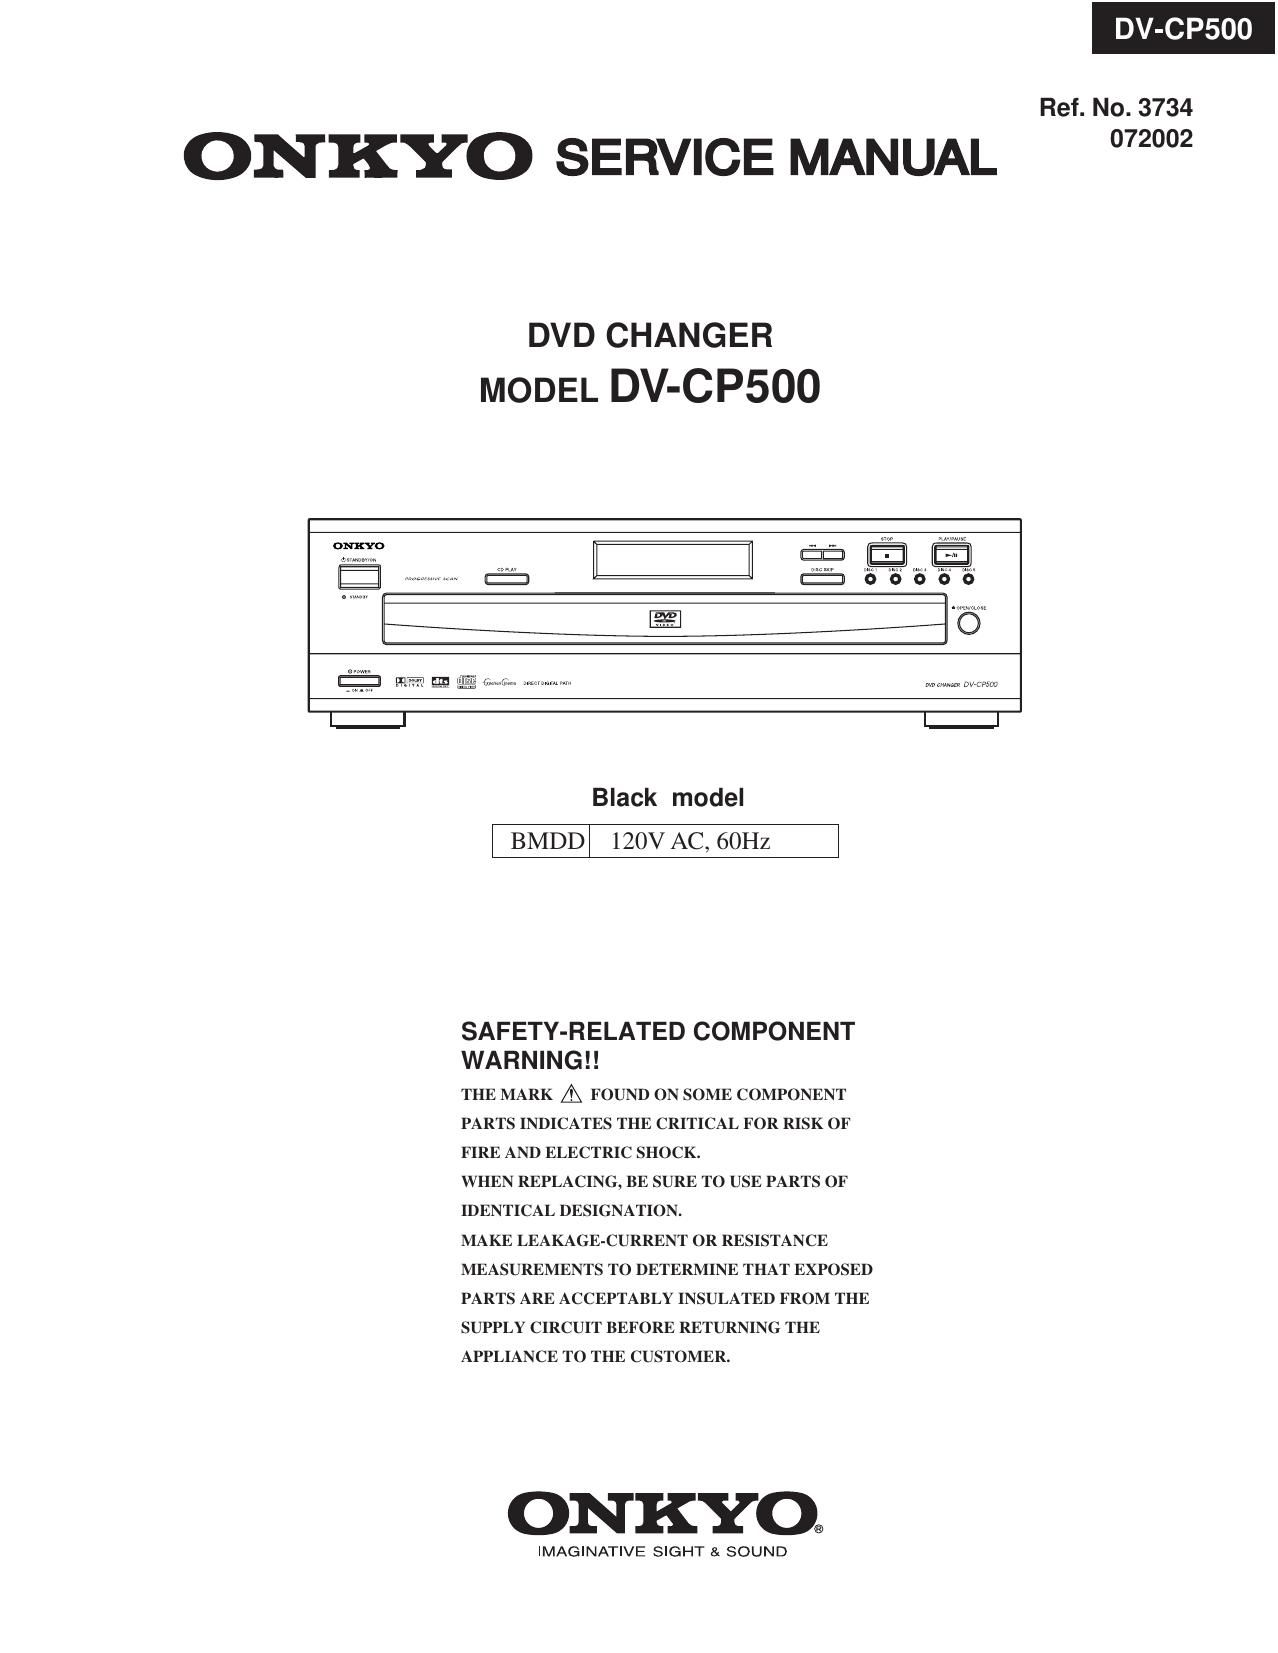 Onkyo DVCP 500 Service Manual